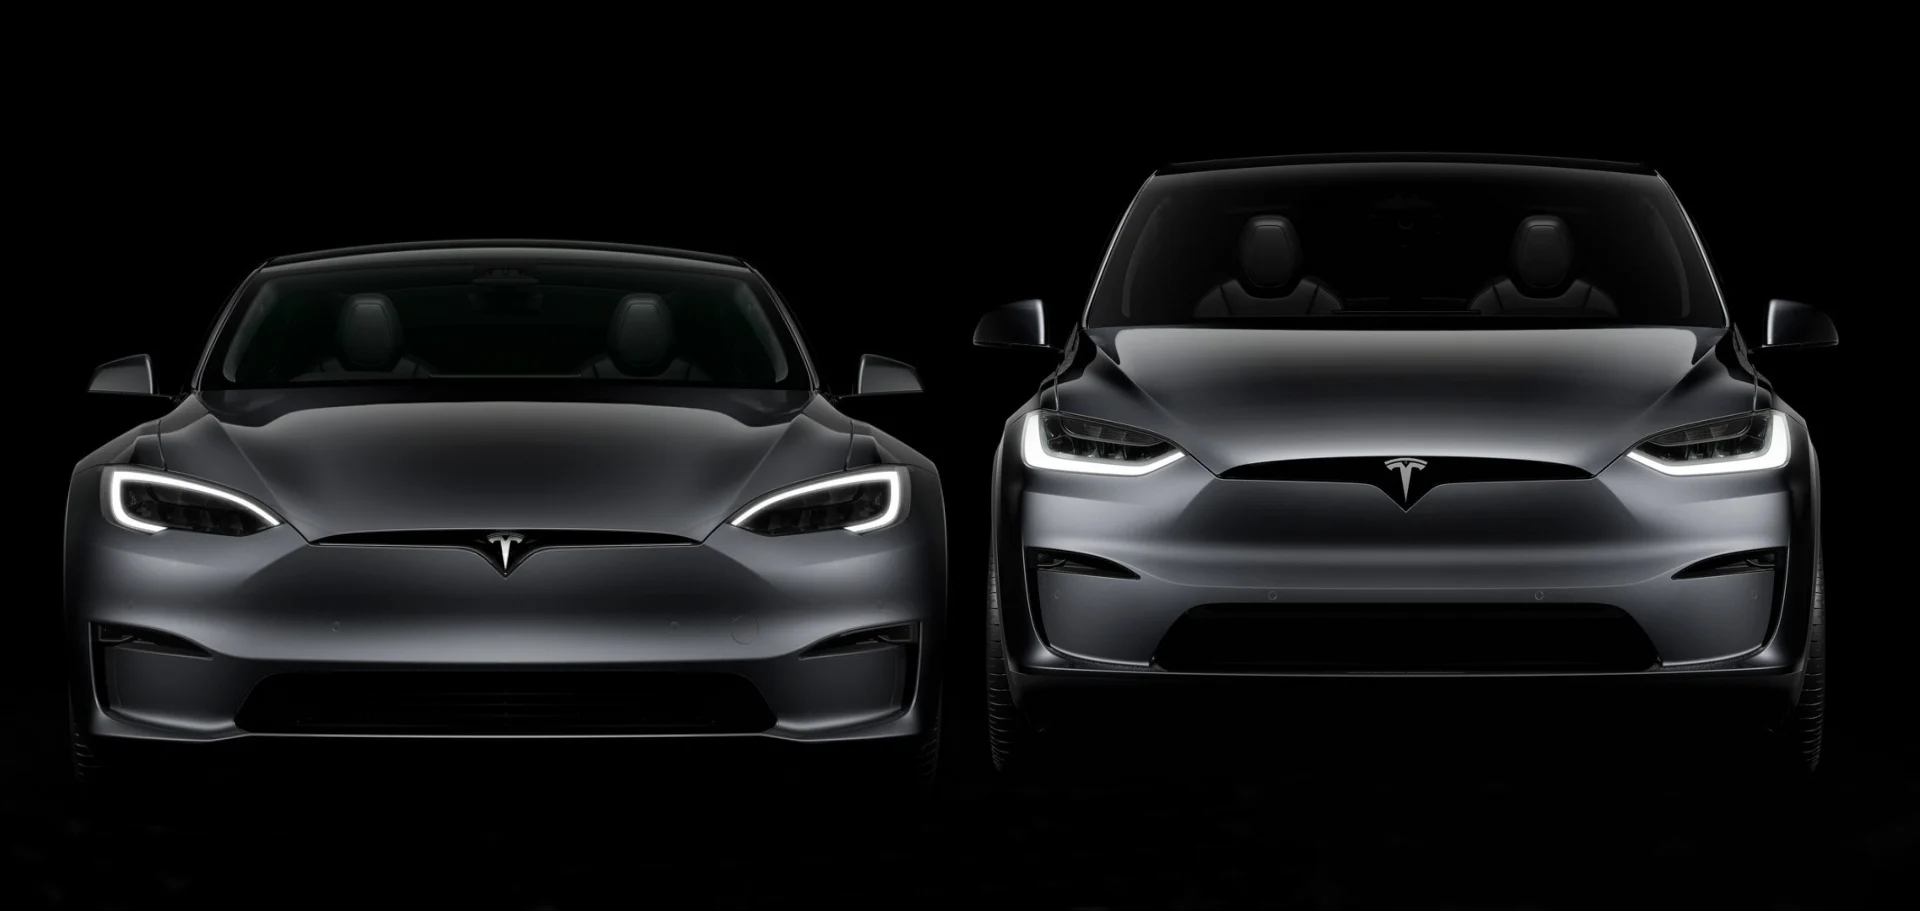 Νέες φθηνότερες εκδόσεις των Model S και Model X παρουσιάζει η Tesla, με μια σημαντική διαφορά